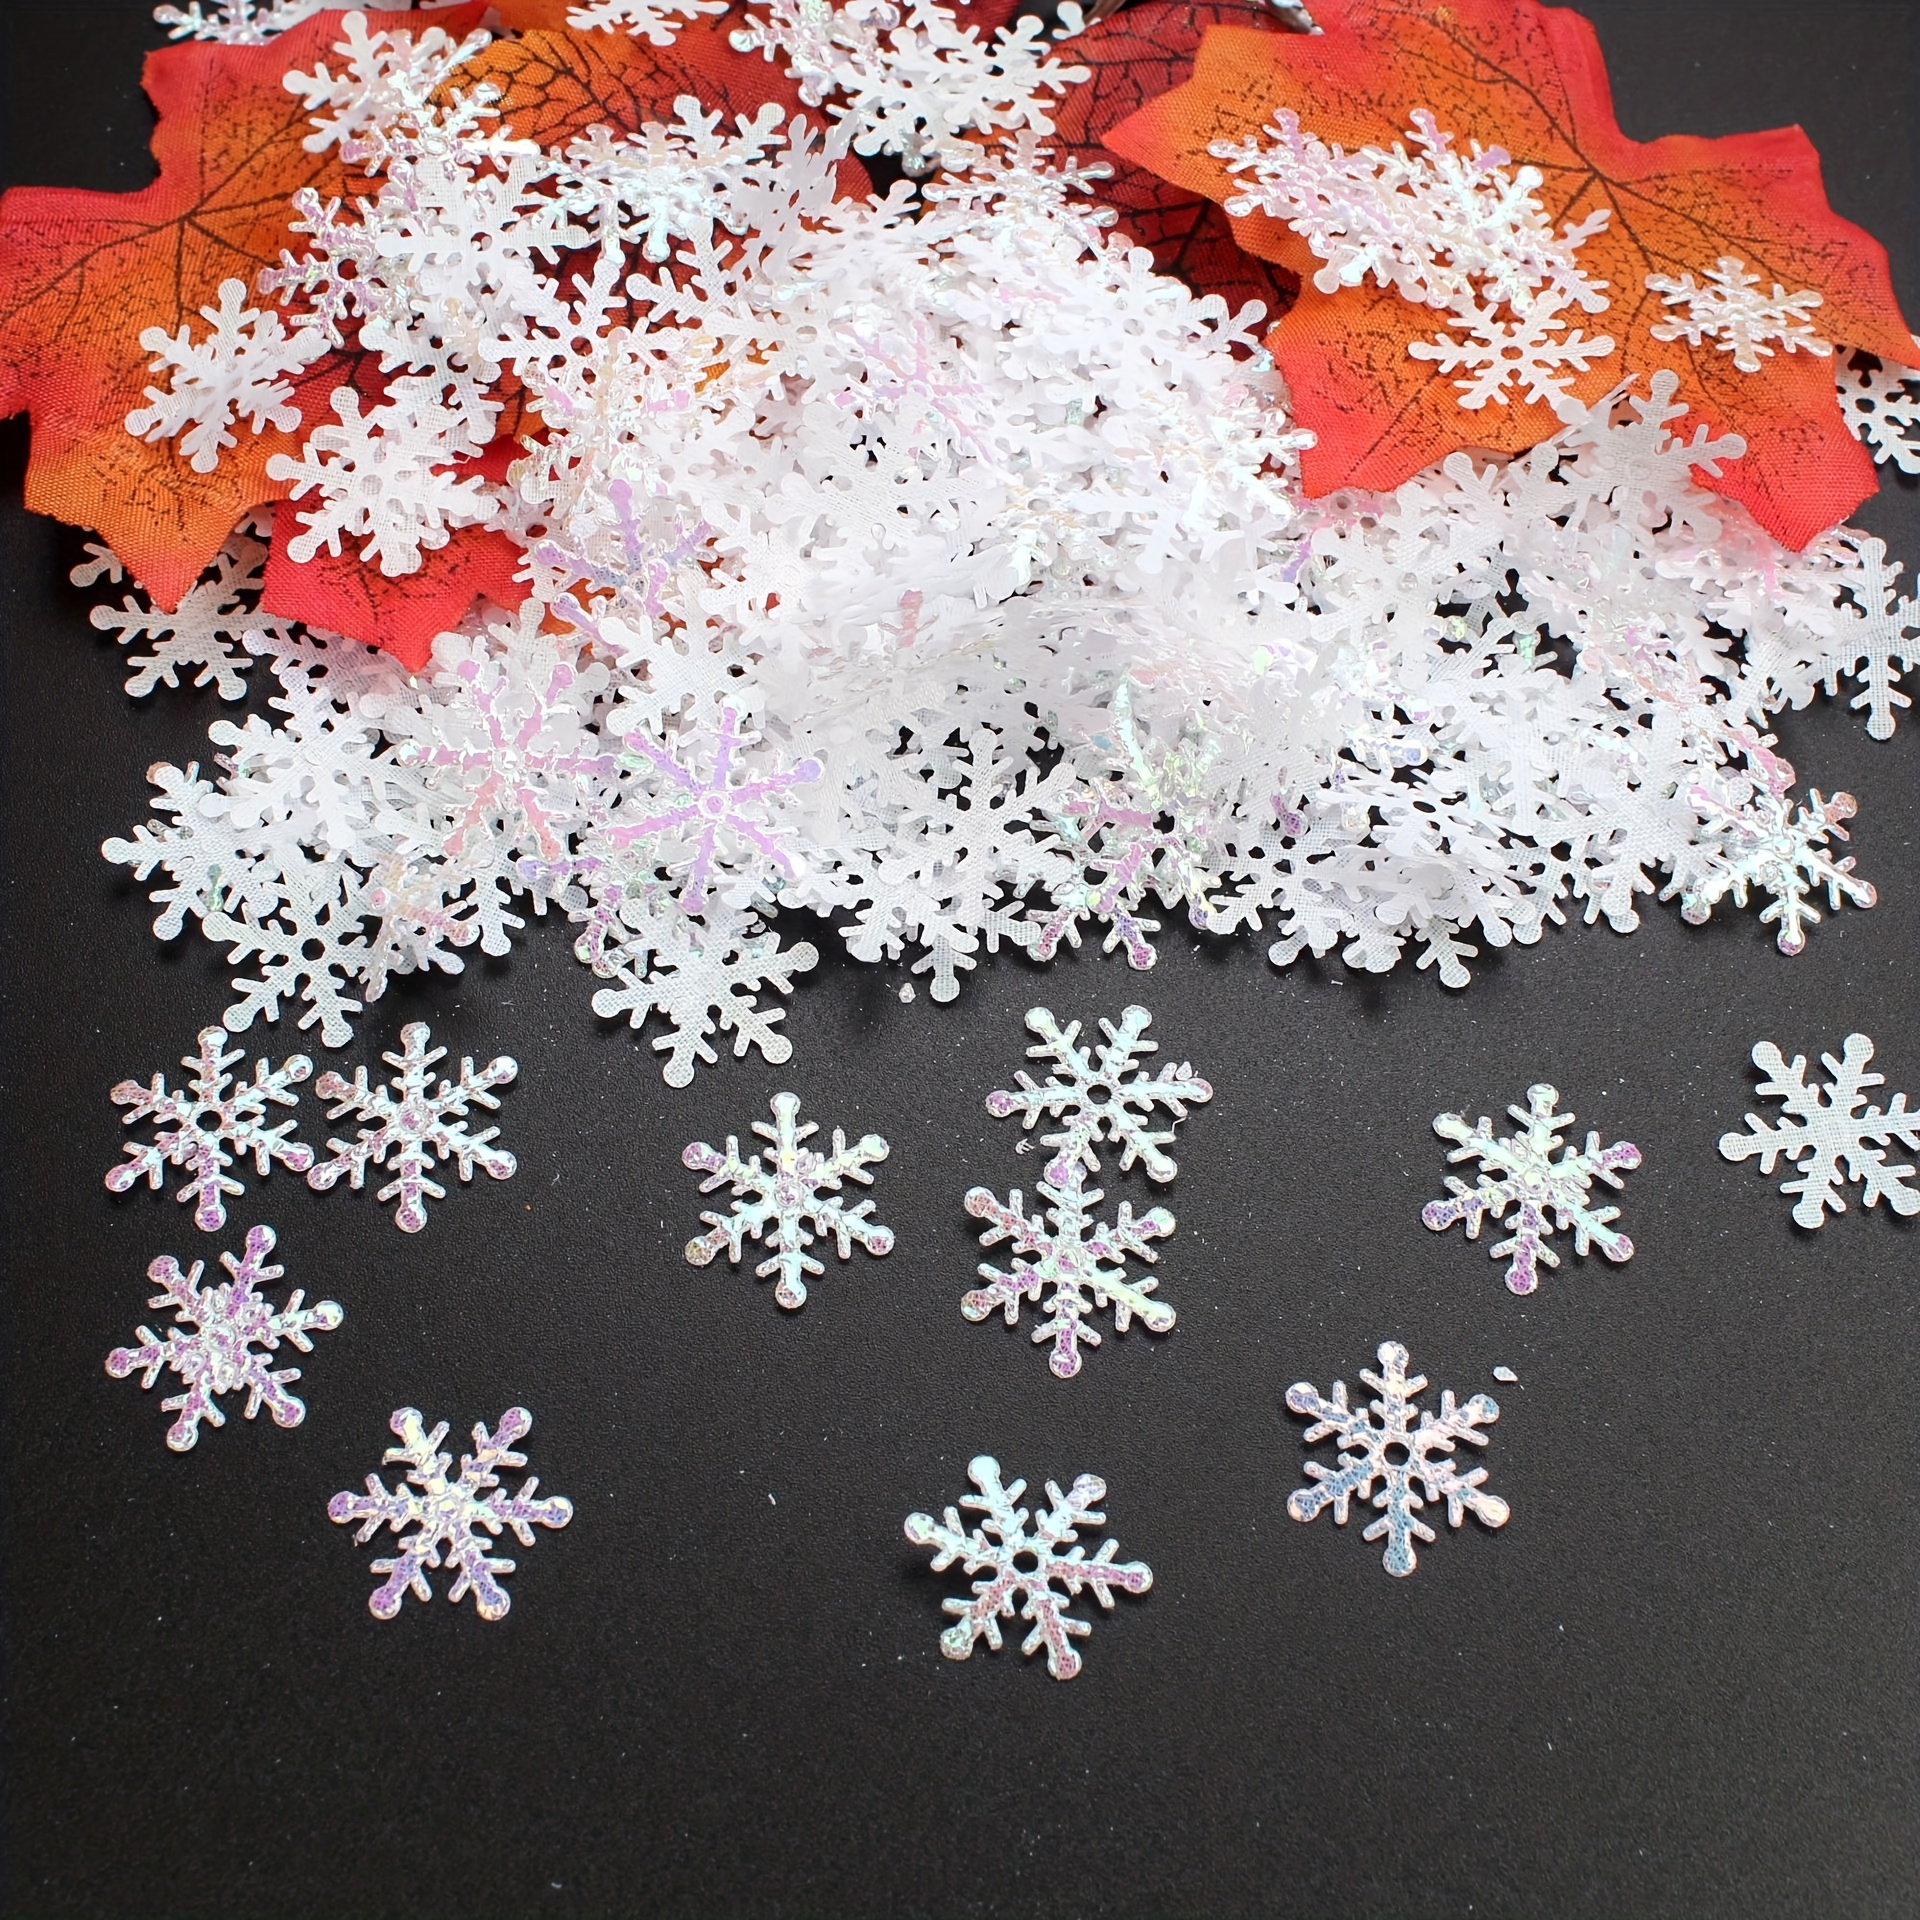  1600 Pieces 3 Size Snowflake Confetti Snowflake